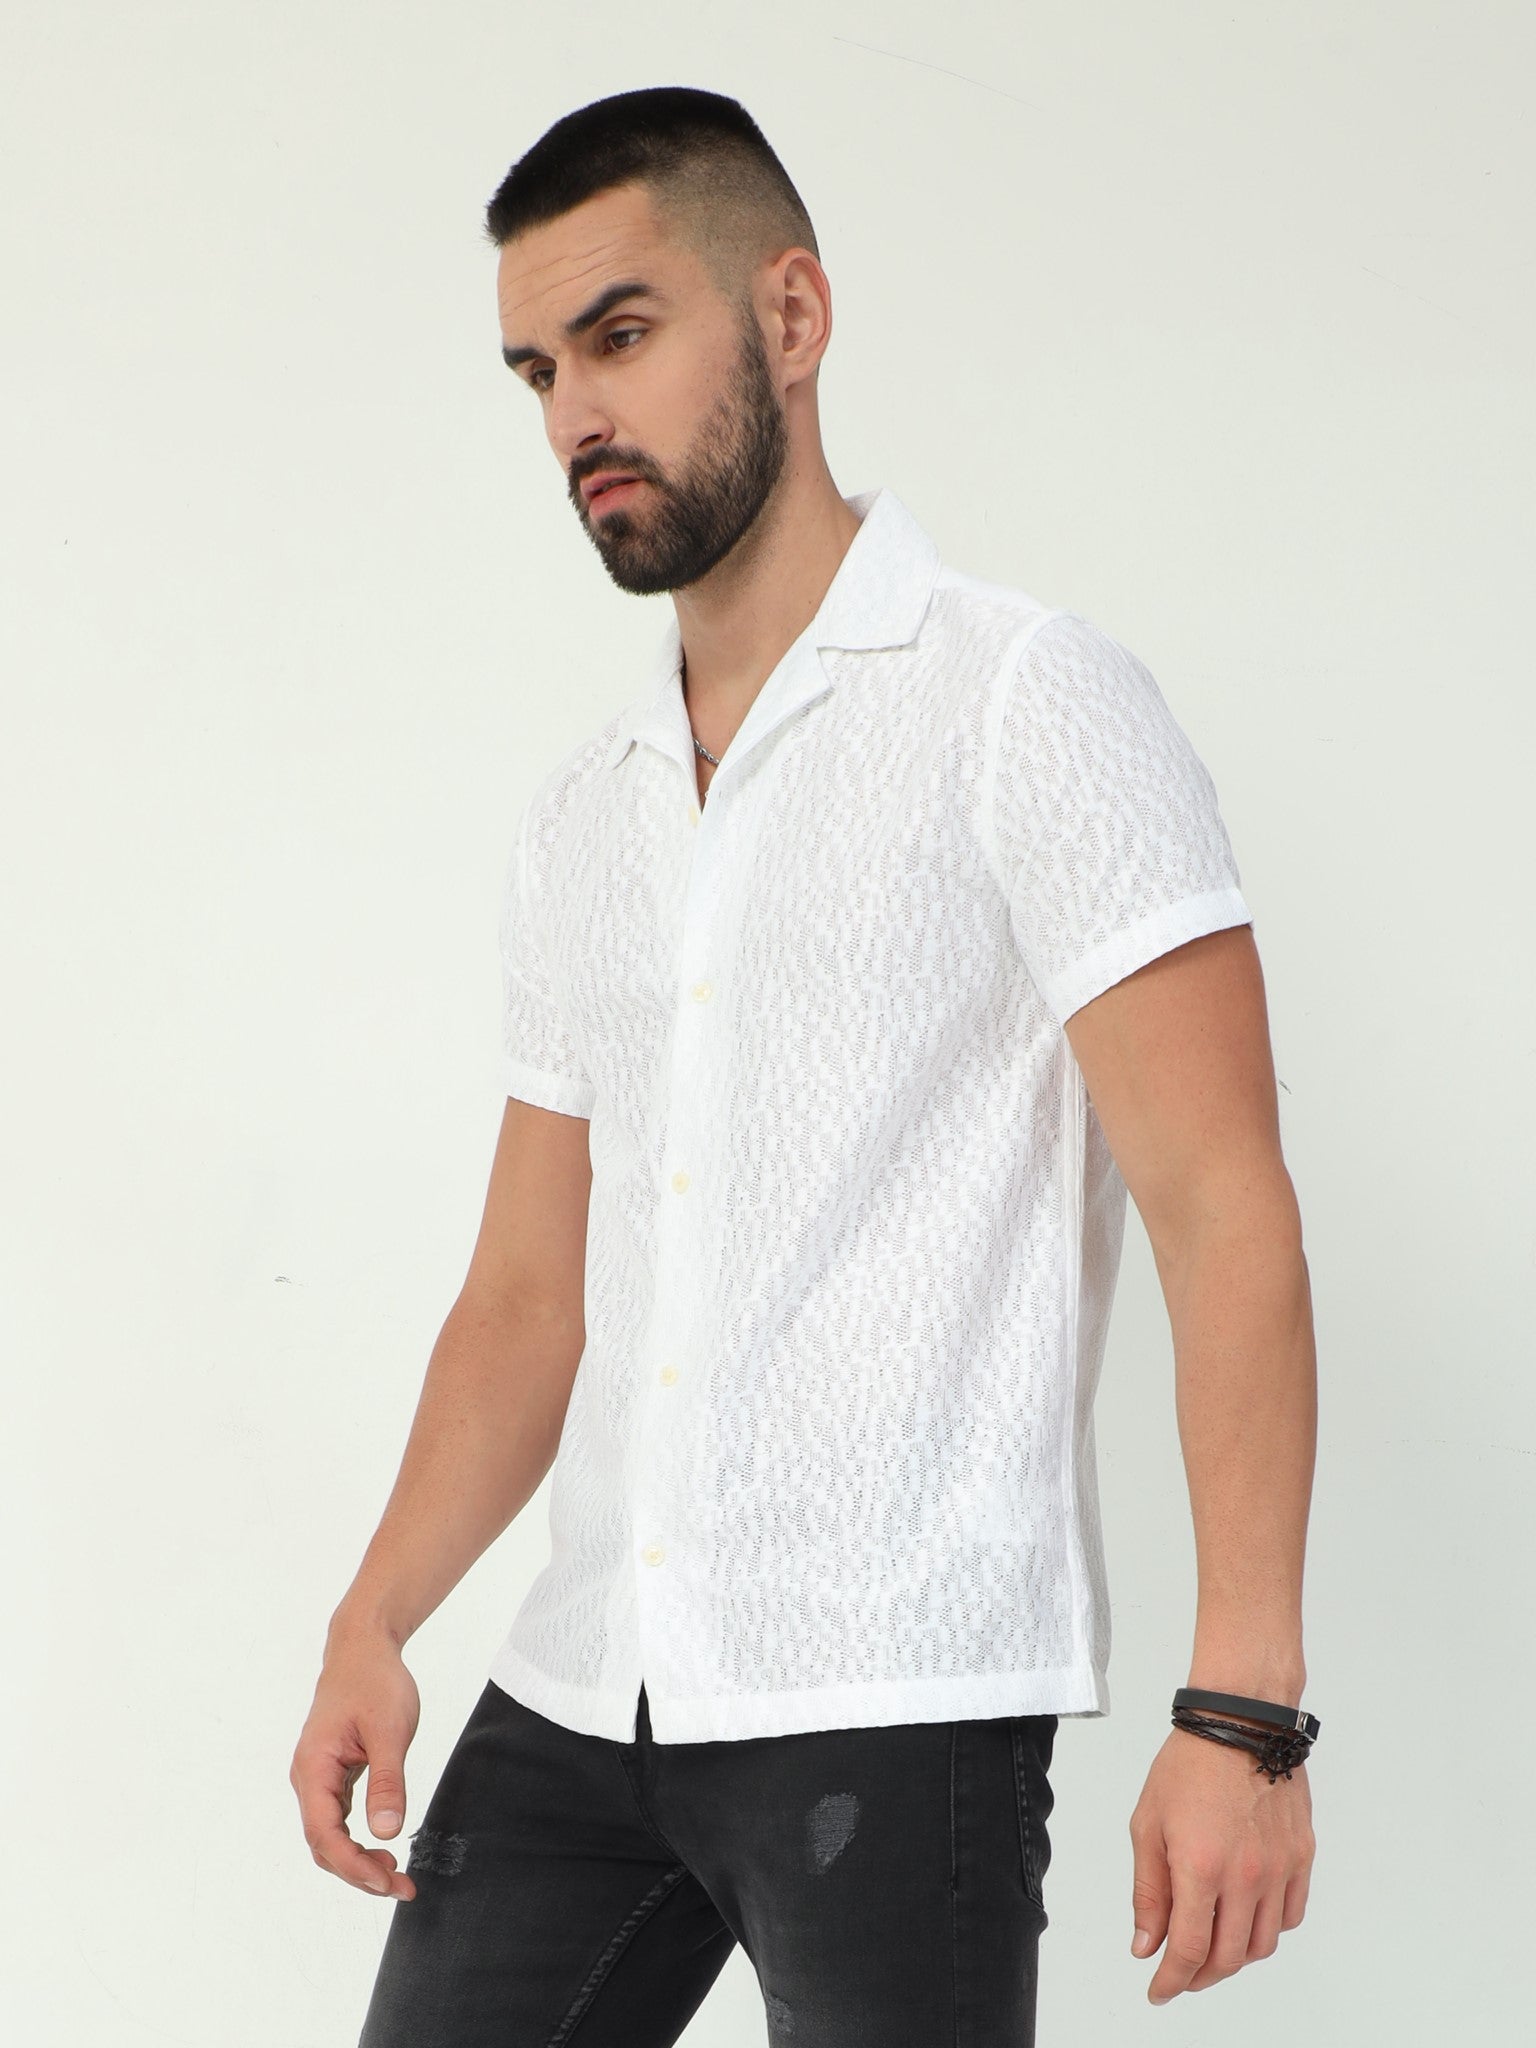 Lattice White Crochet Shirt for Men